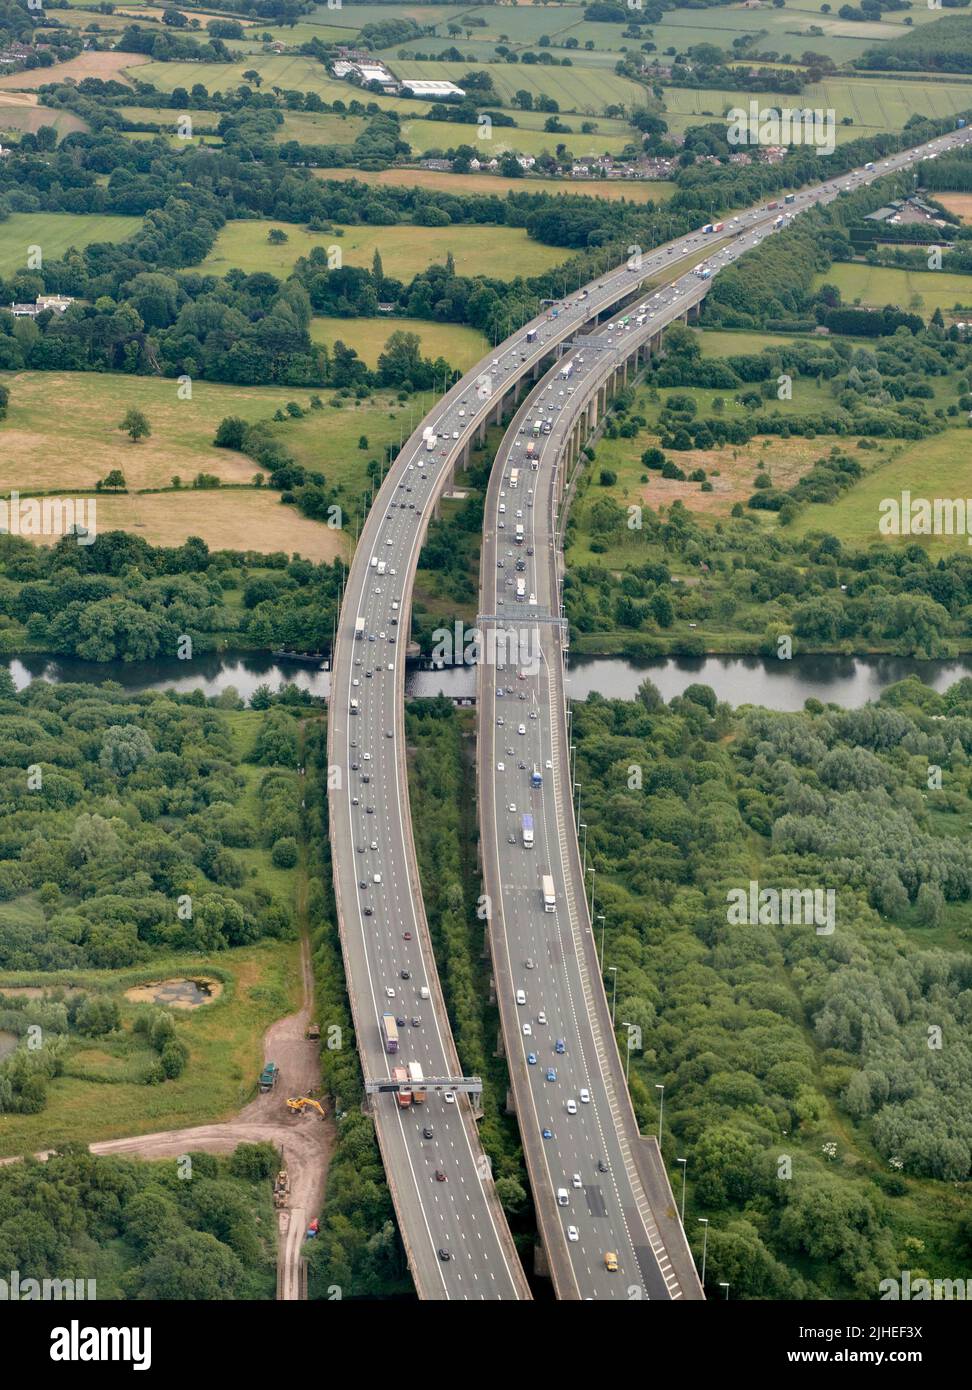 Ein Luftbild des Thelwell Viadukts, das auf der Autobahn M6 über den Manchester Ship Canal in der Nähe von Warrington, Tscheshire, Nordwestengland, Großbritannien, führt Stockfoto